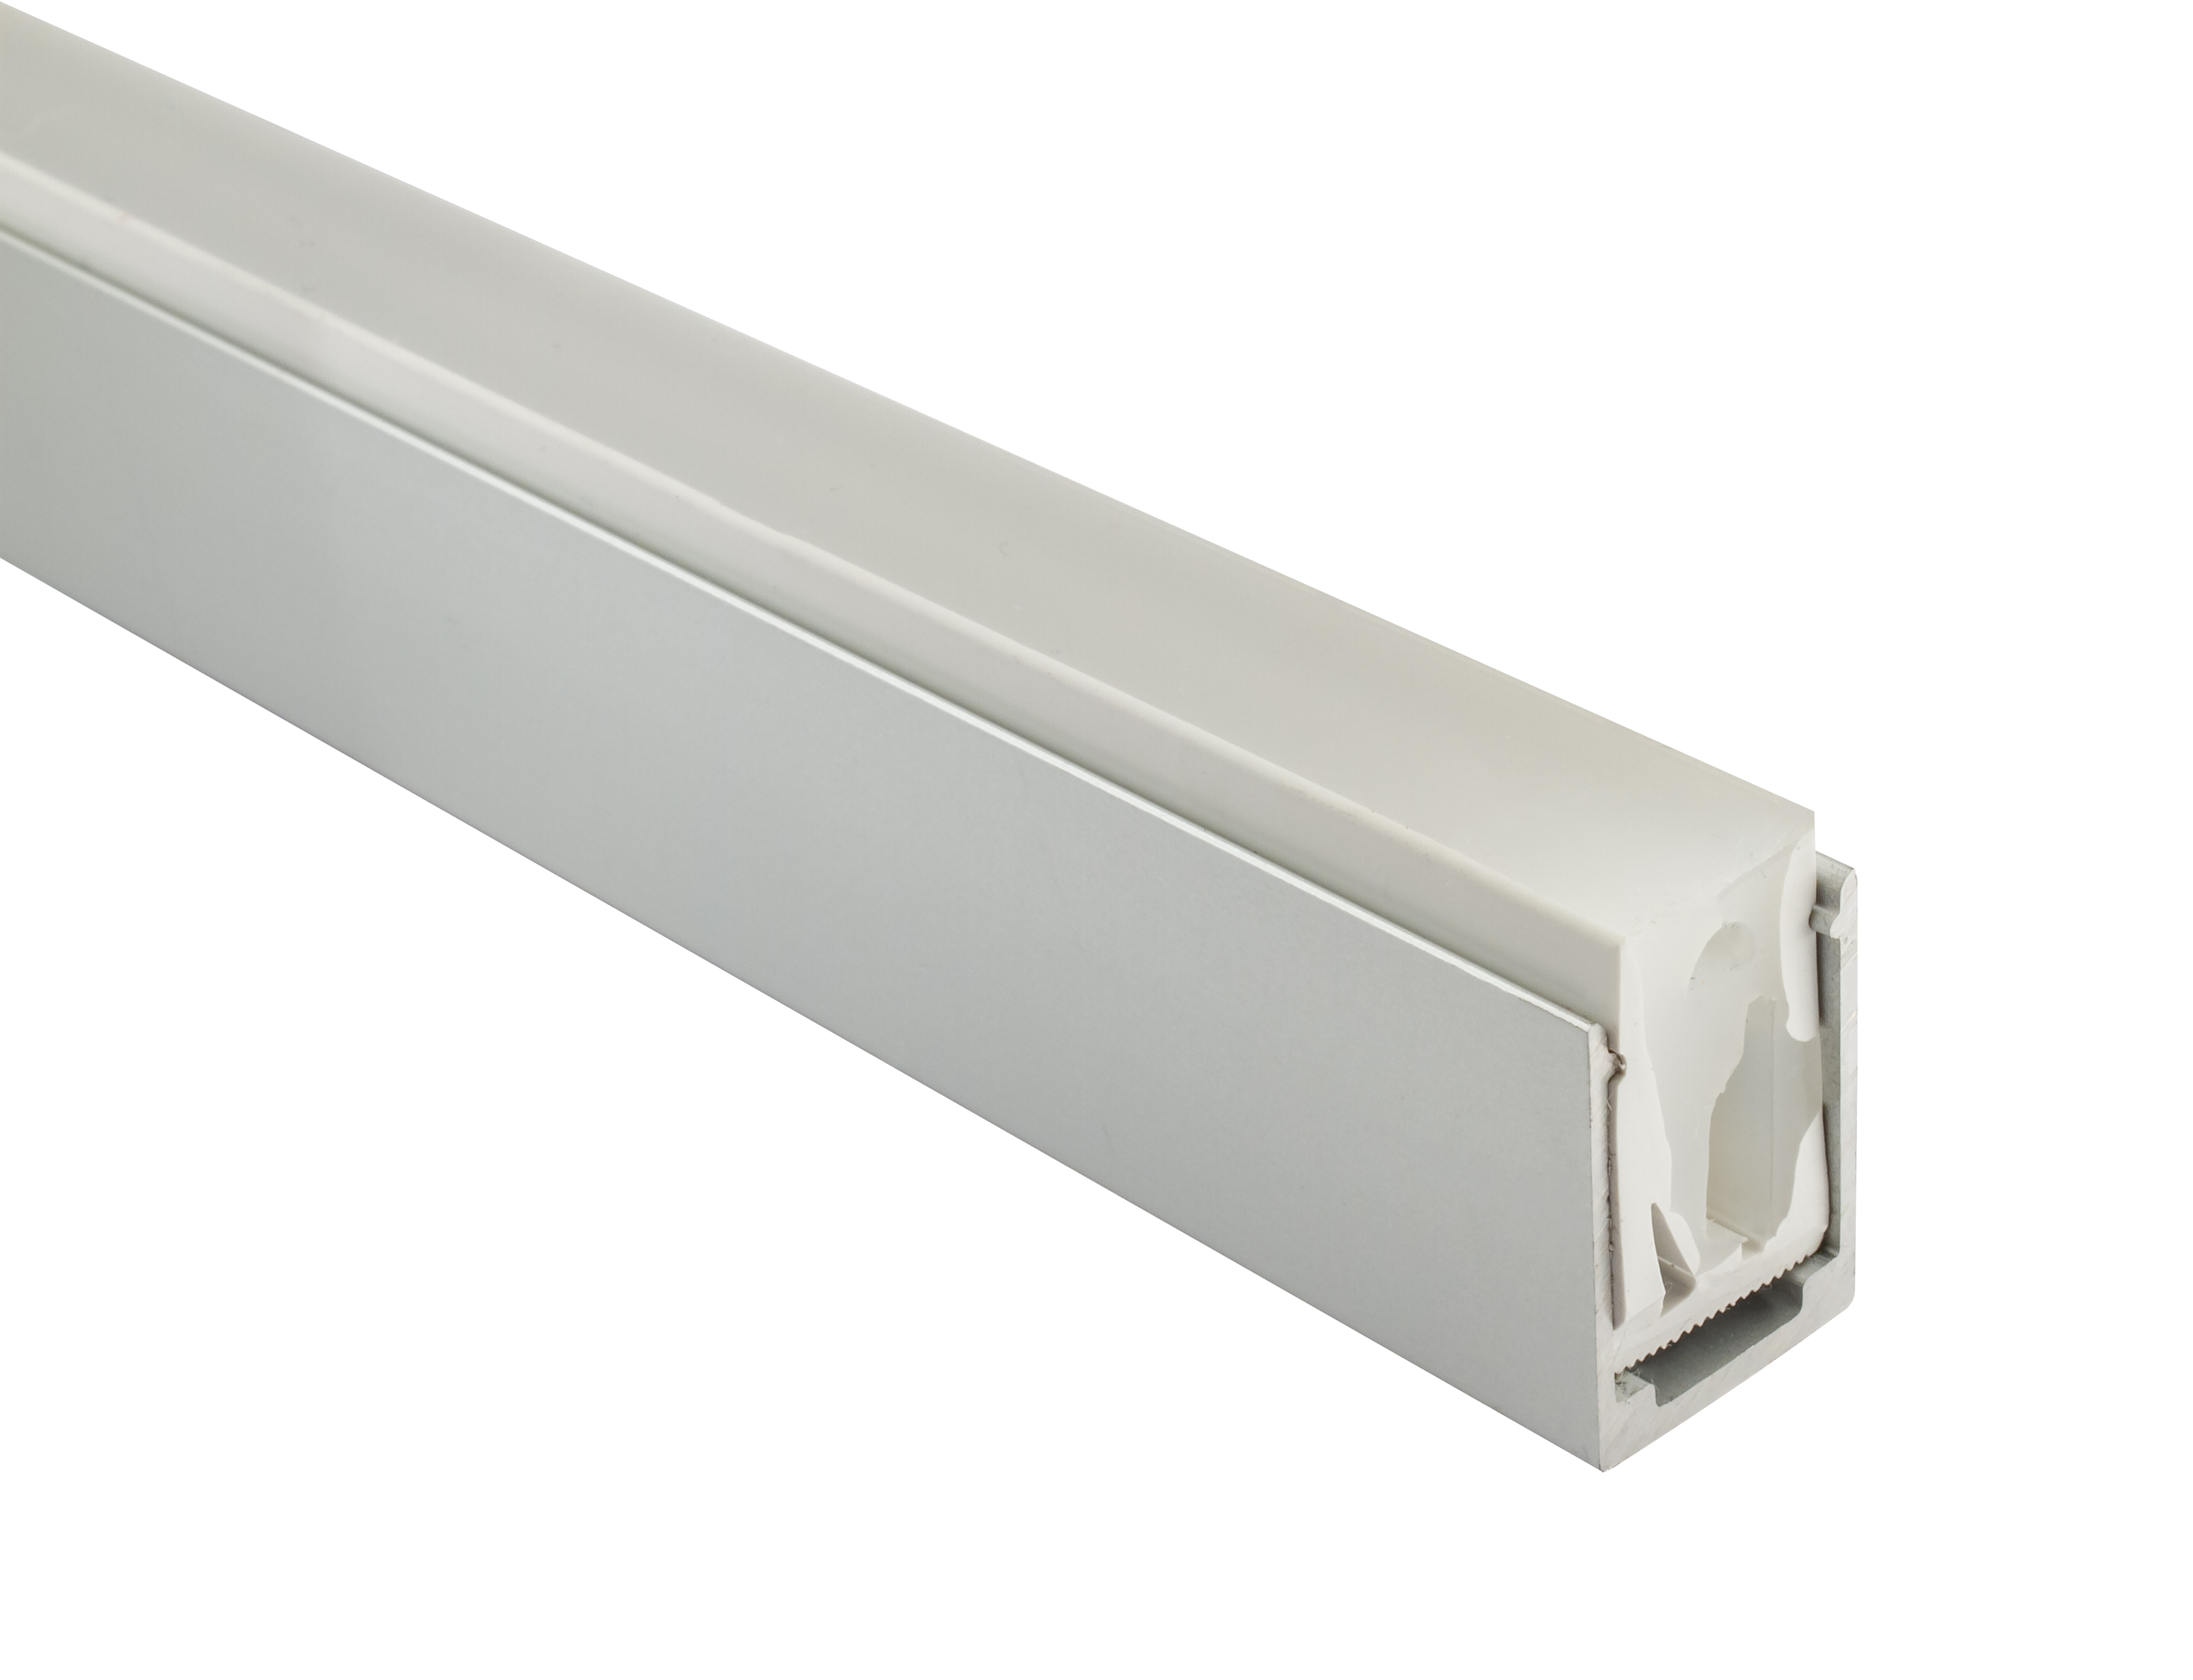 2m Alu-Profil für LED Flex Tube, Silikon-Schlauch 16 x 16 mm (Art.-Nr.  107947), LED Alu-Profile 2m, LED ALU-PROFILE